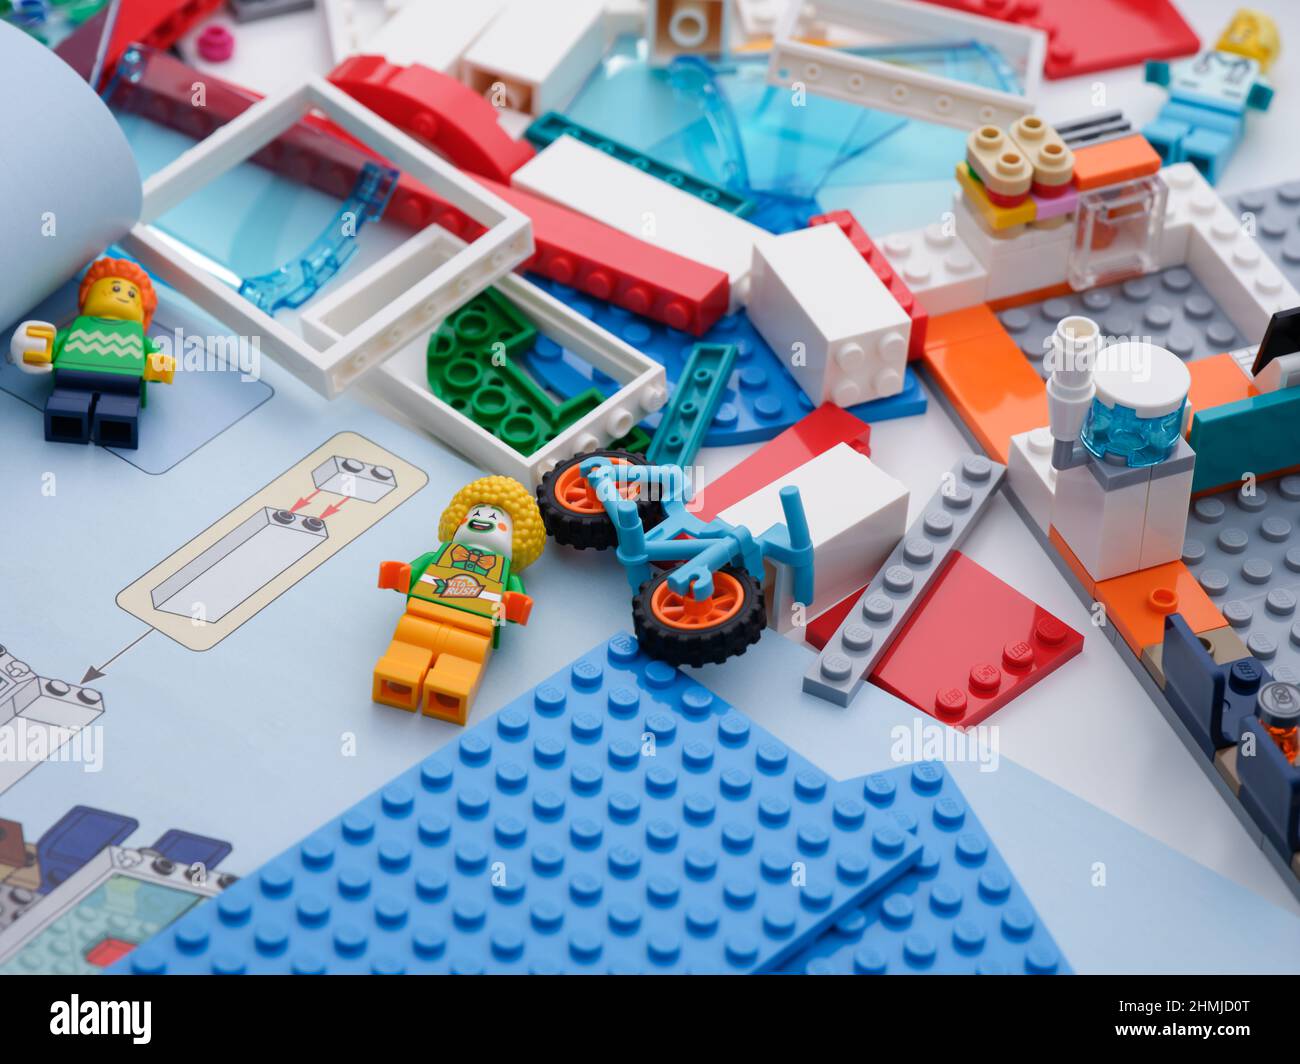 Tambov, Fédération de Russie - 09 février 2022 quelques morceaux et mini-figurines Lego sur un bureau avec un livret d'instructions ouvert près d'eux. Gros plan. Banque D'Images